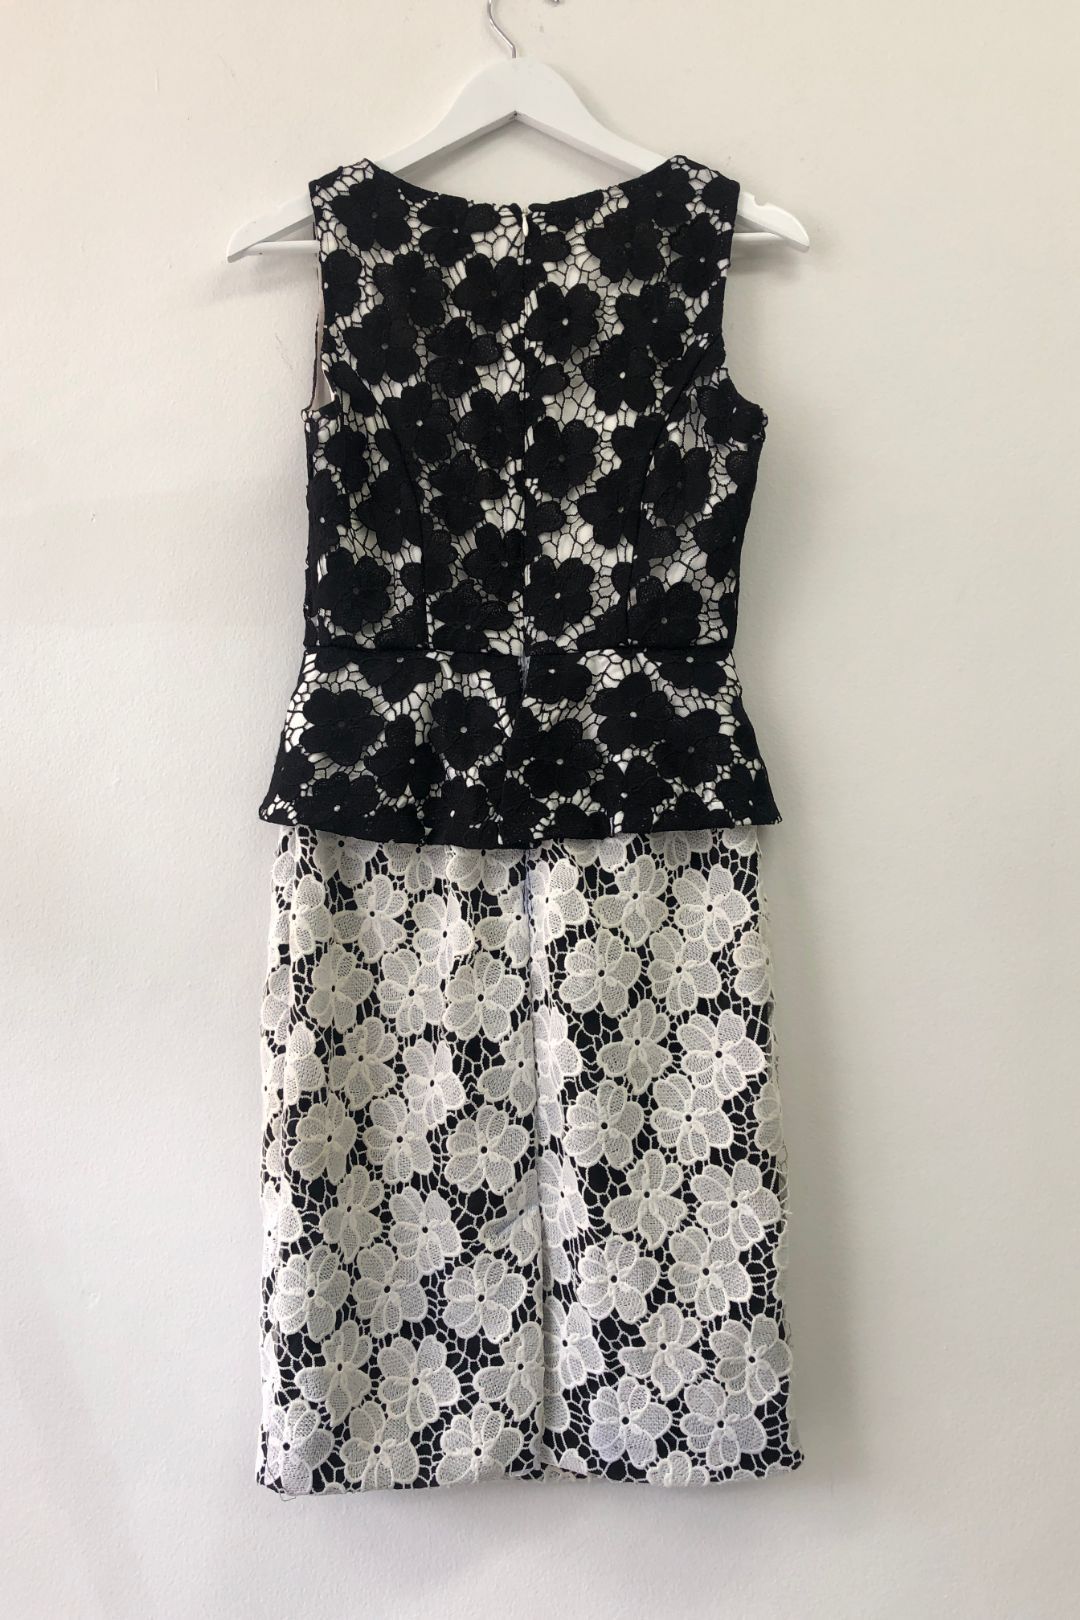 Review - Floral Lace Mini Dress